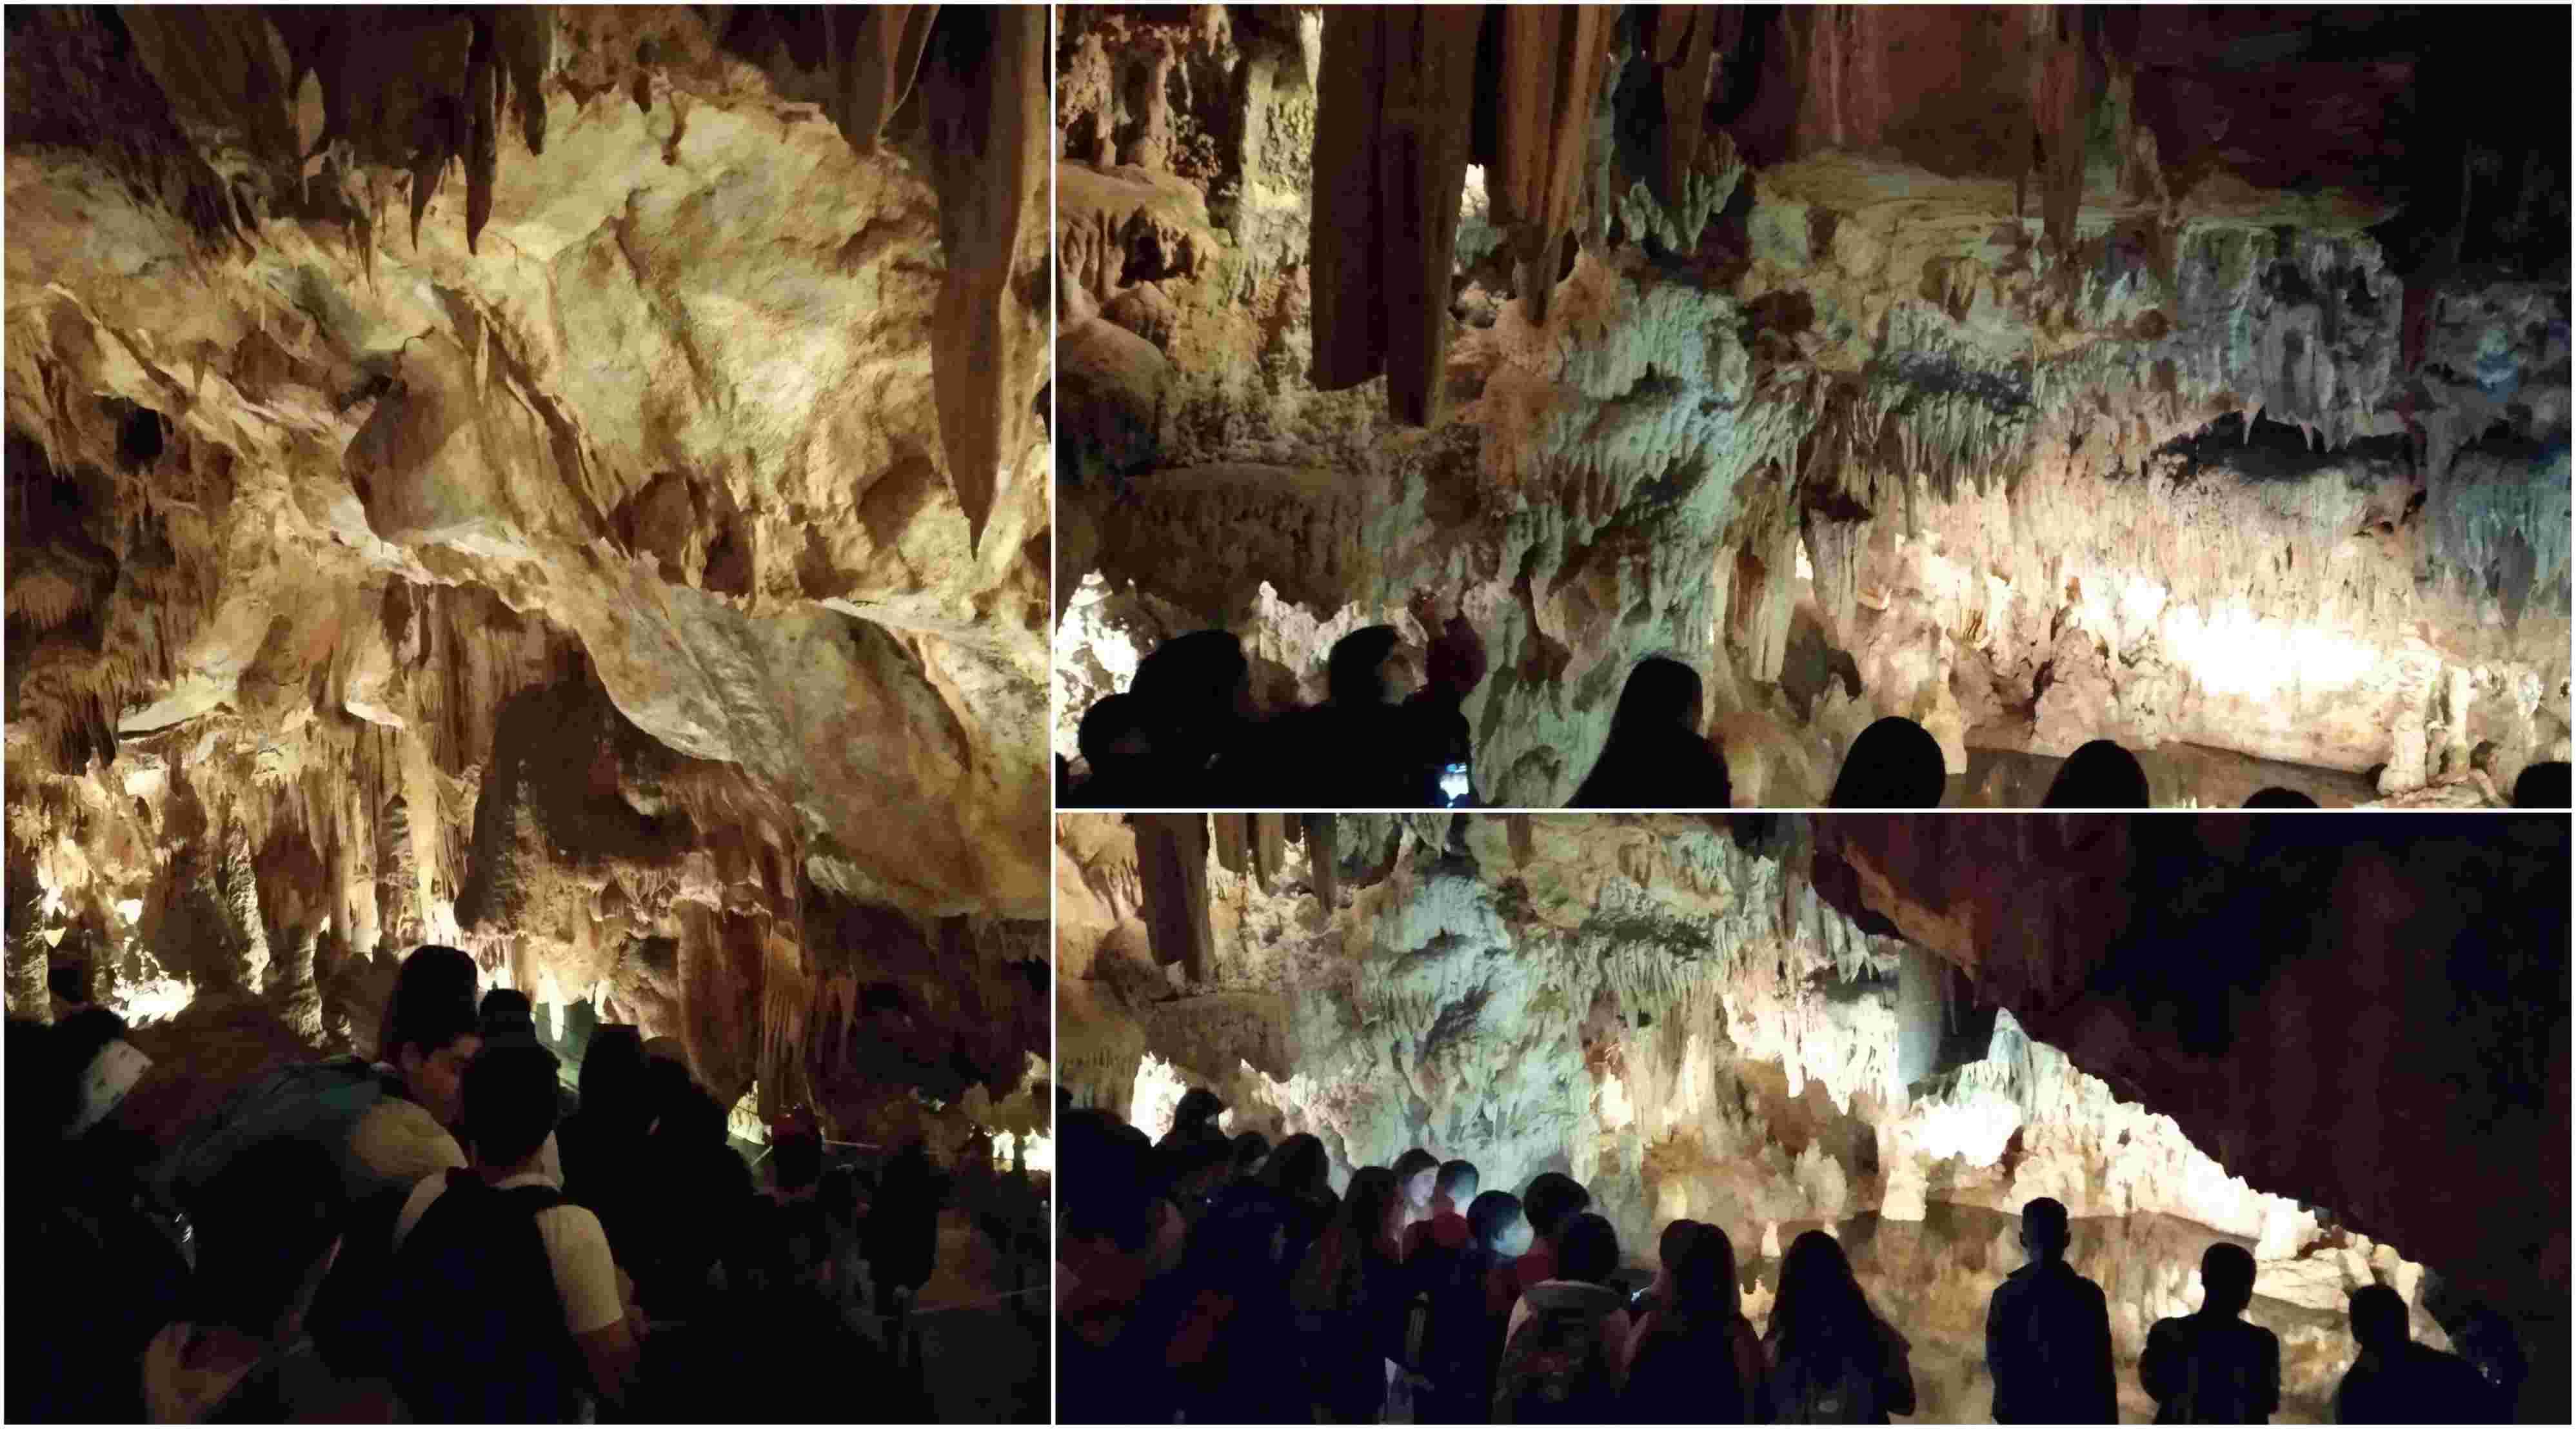 grutas stantonio maio19